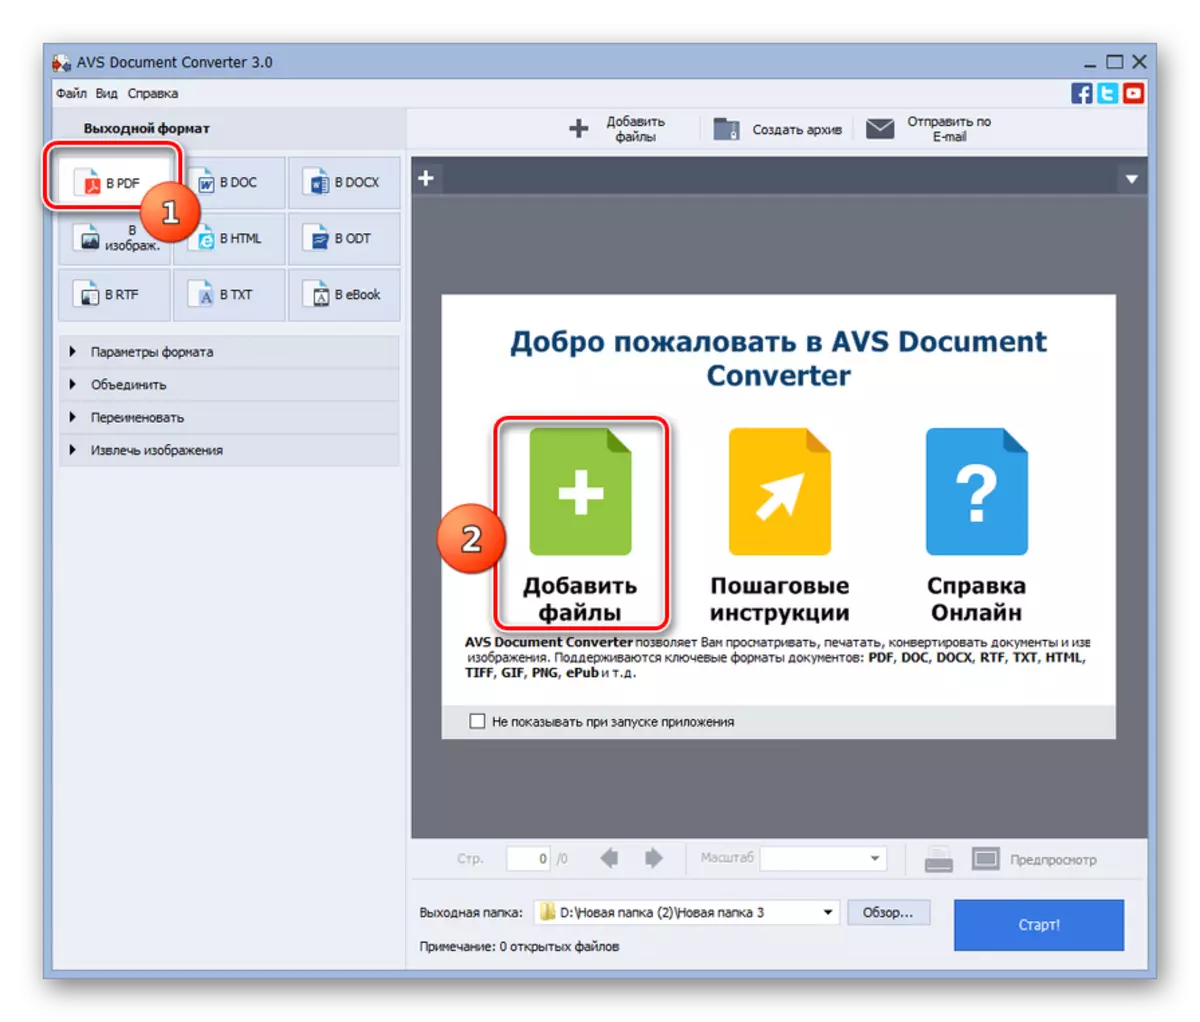 به پنجره افزودن فایل در برنامه AVS Document Converter بروید